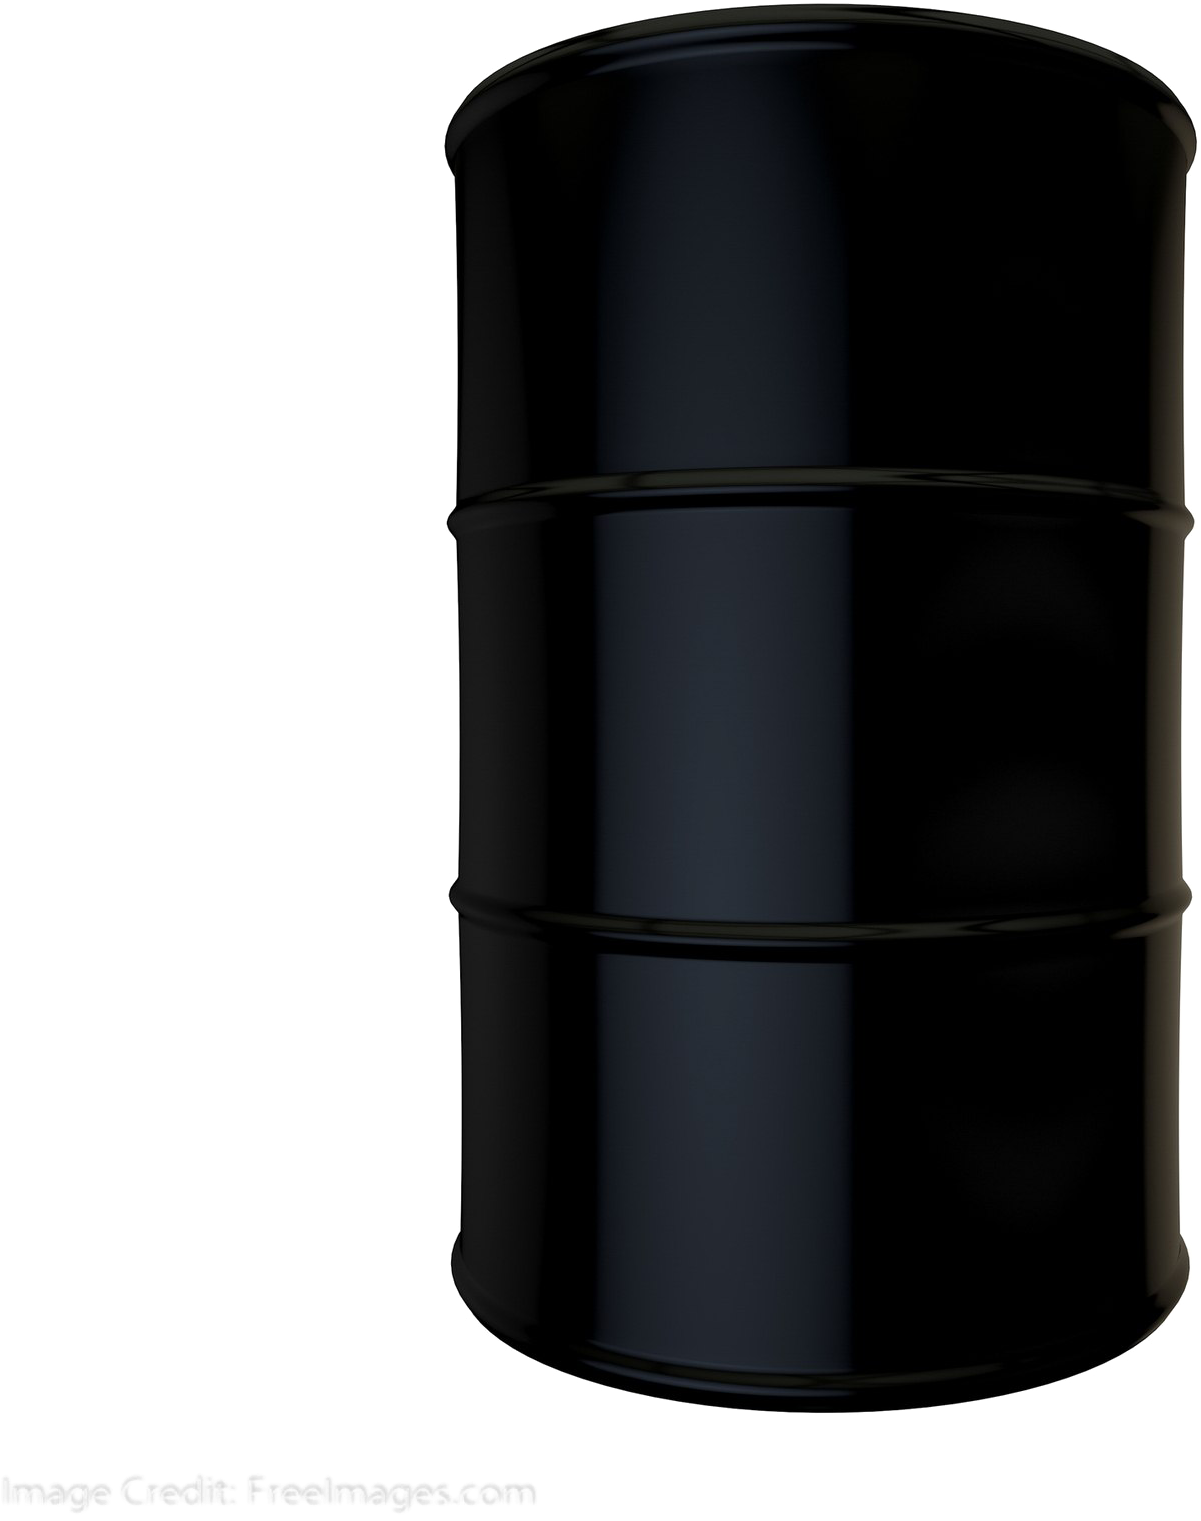 Oil Barrel Transparent Image - Plastic Clipart (1600x1600), Png Download